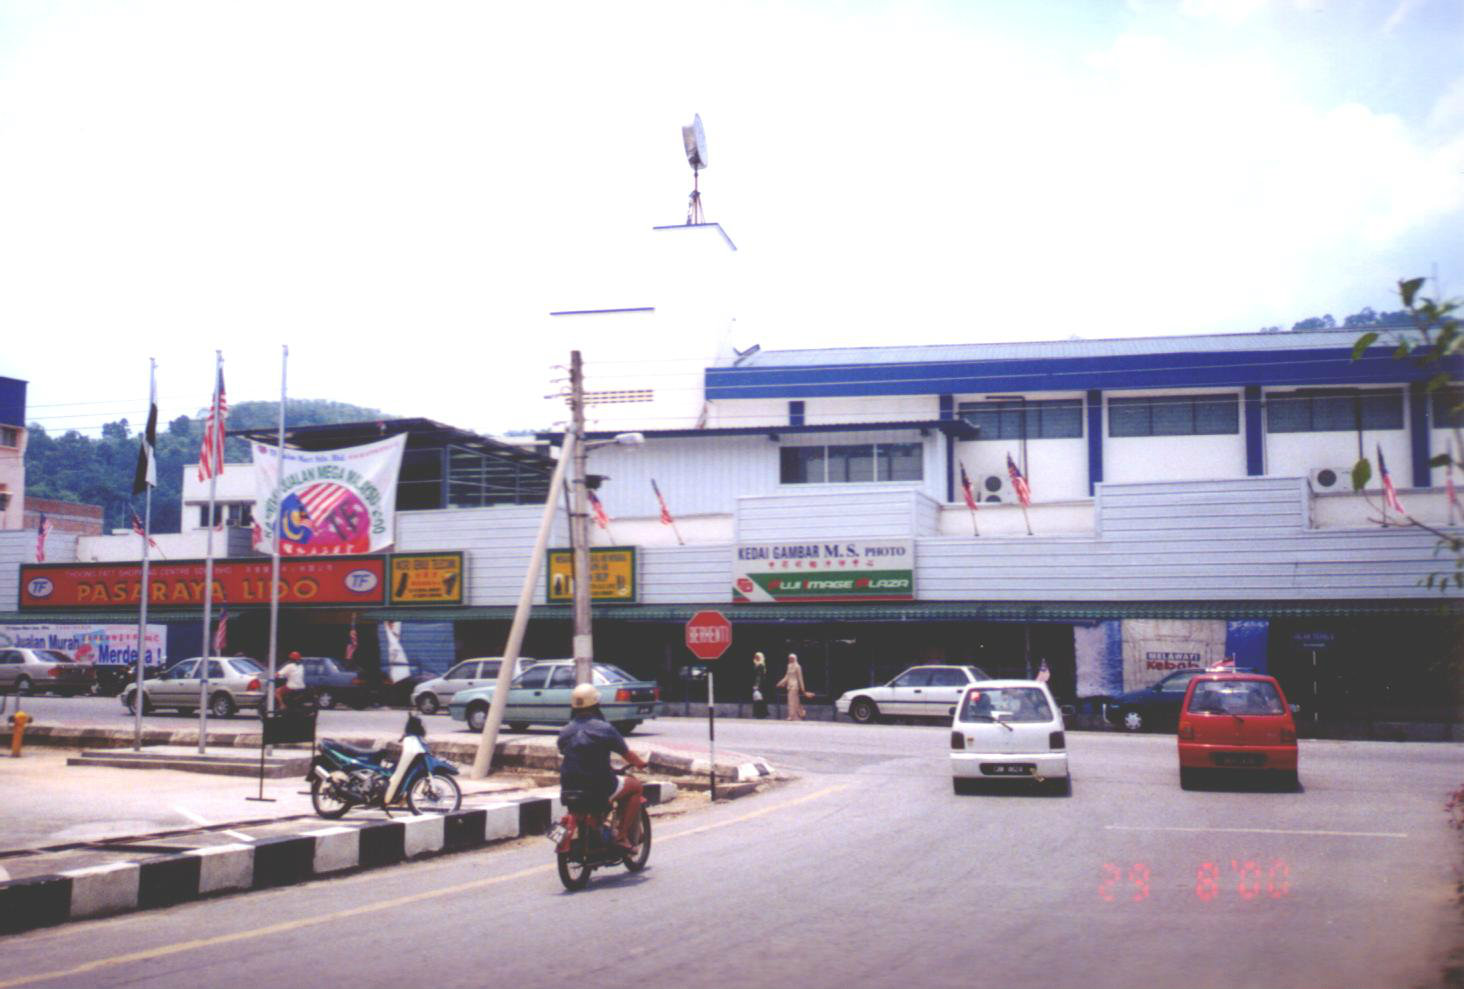 General View to TF Value Mart Pasaraya Lido at Bentong, Paha